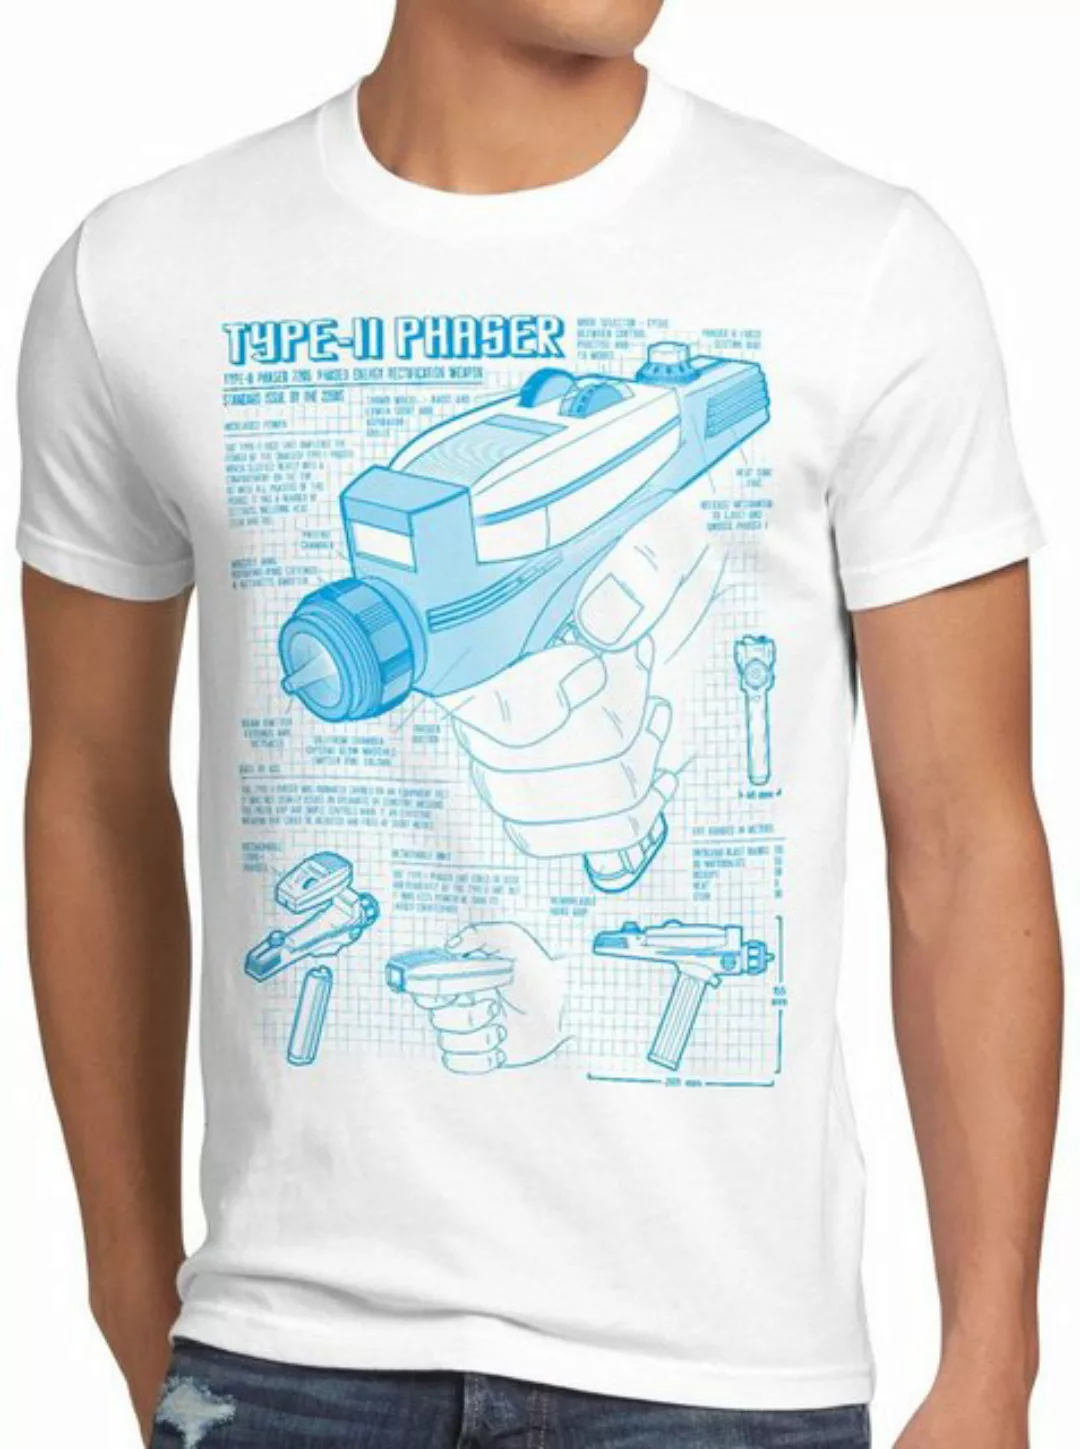 style3 Print-Shirt Herren T-Shirt Phaser 2265 Blaupause NCC-1701 trek trekk günstig online kaufen